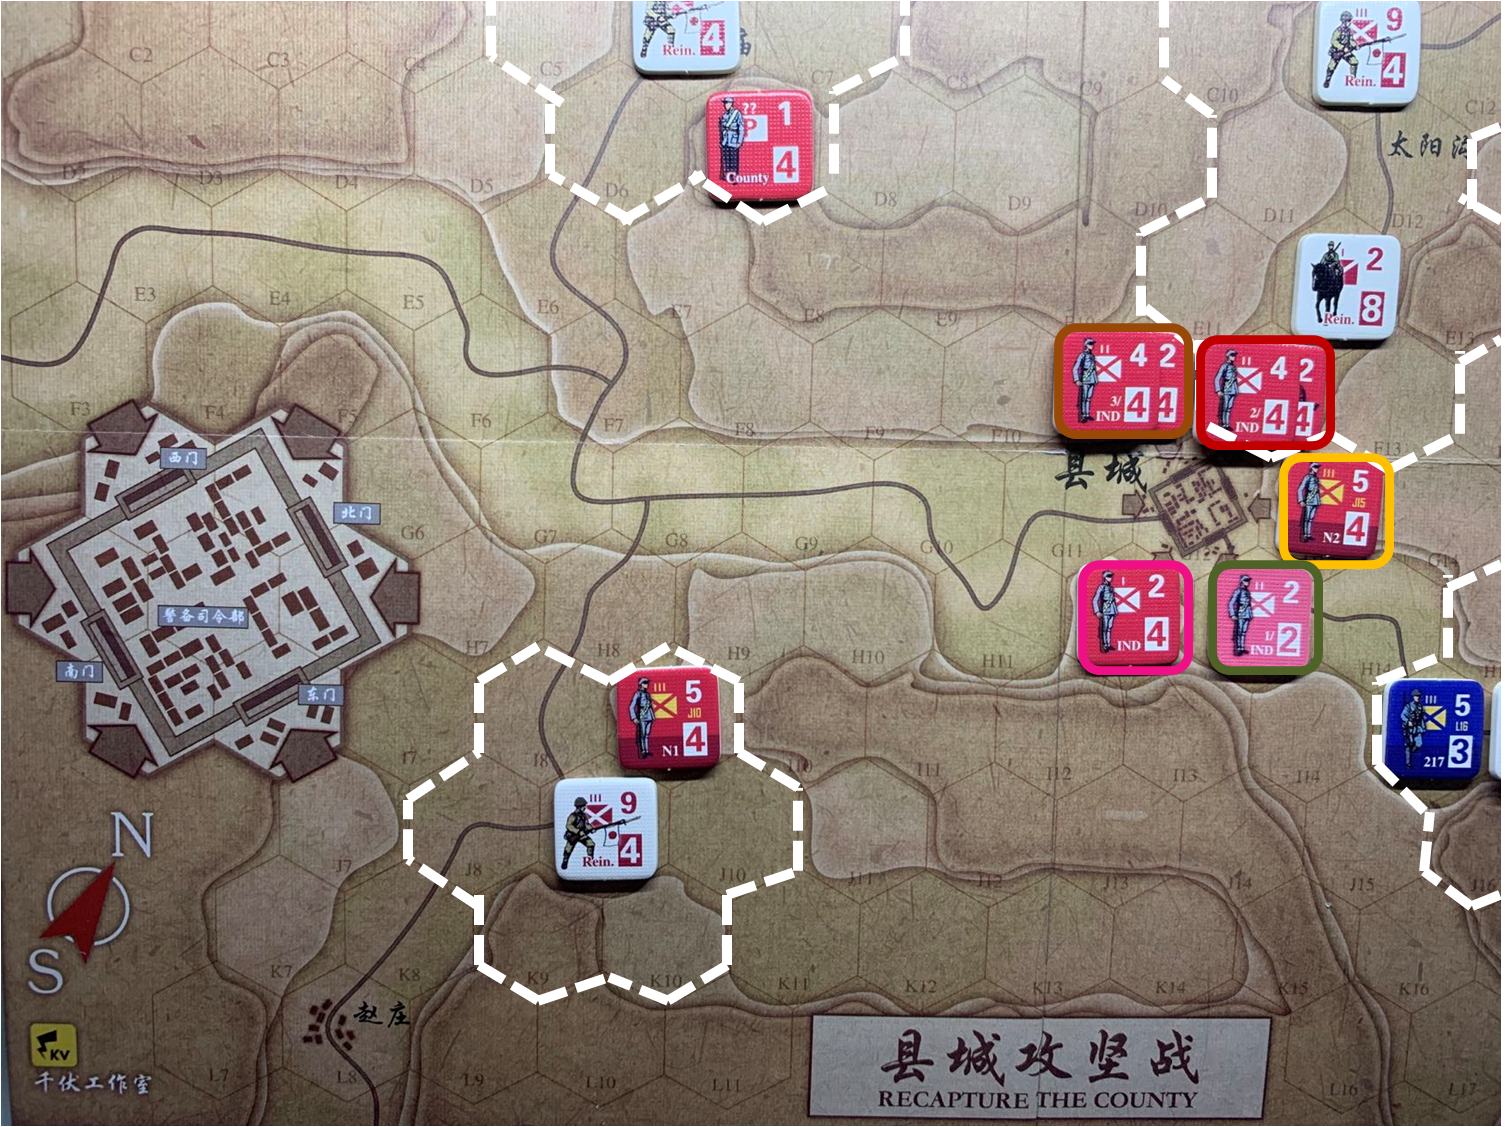 第四回合县城内共军独立团部队和正规军部队N2对于移动命令2、命令3、命令4、命令5、命令6的执行结果，及所有日军增援部队控制区覆盖范围